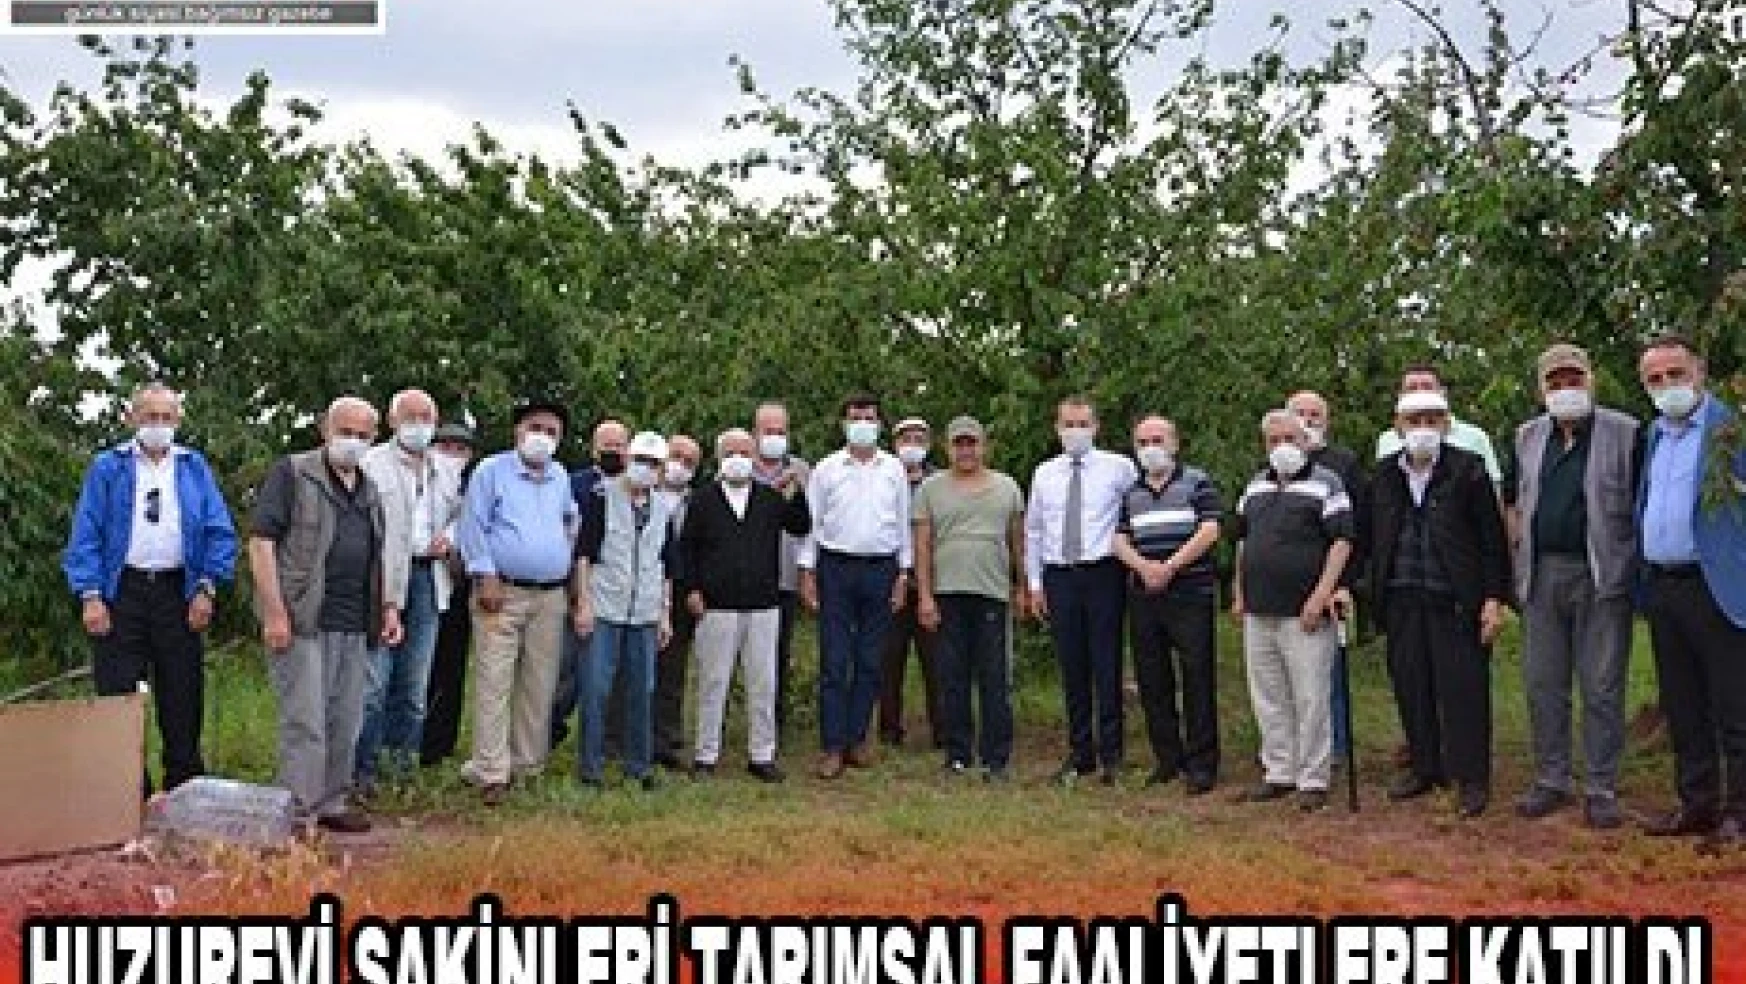 Huzurevi sakinleri tarımsal faaliyetlere katıldı